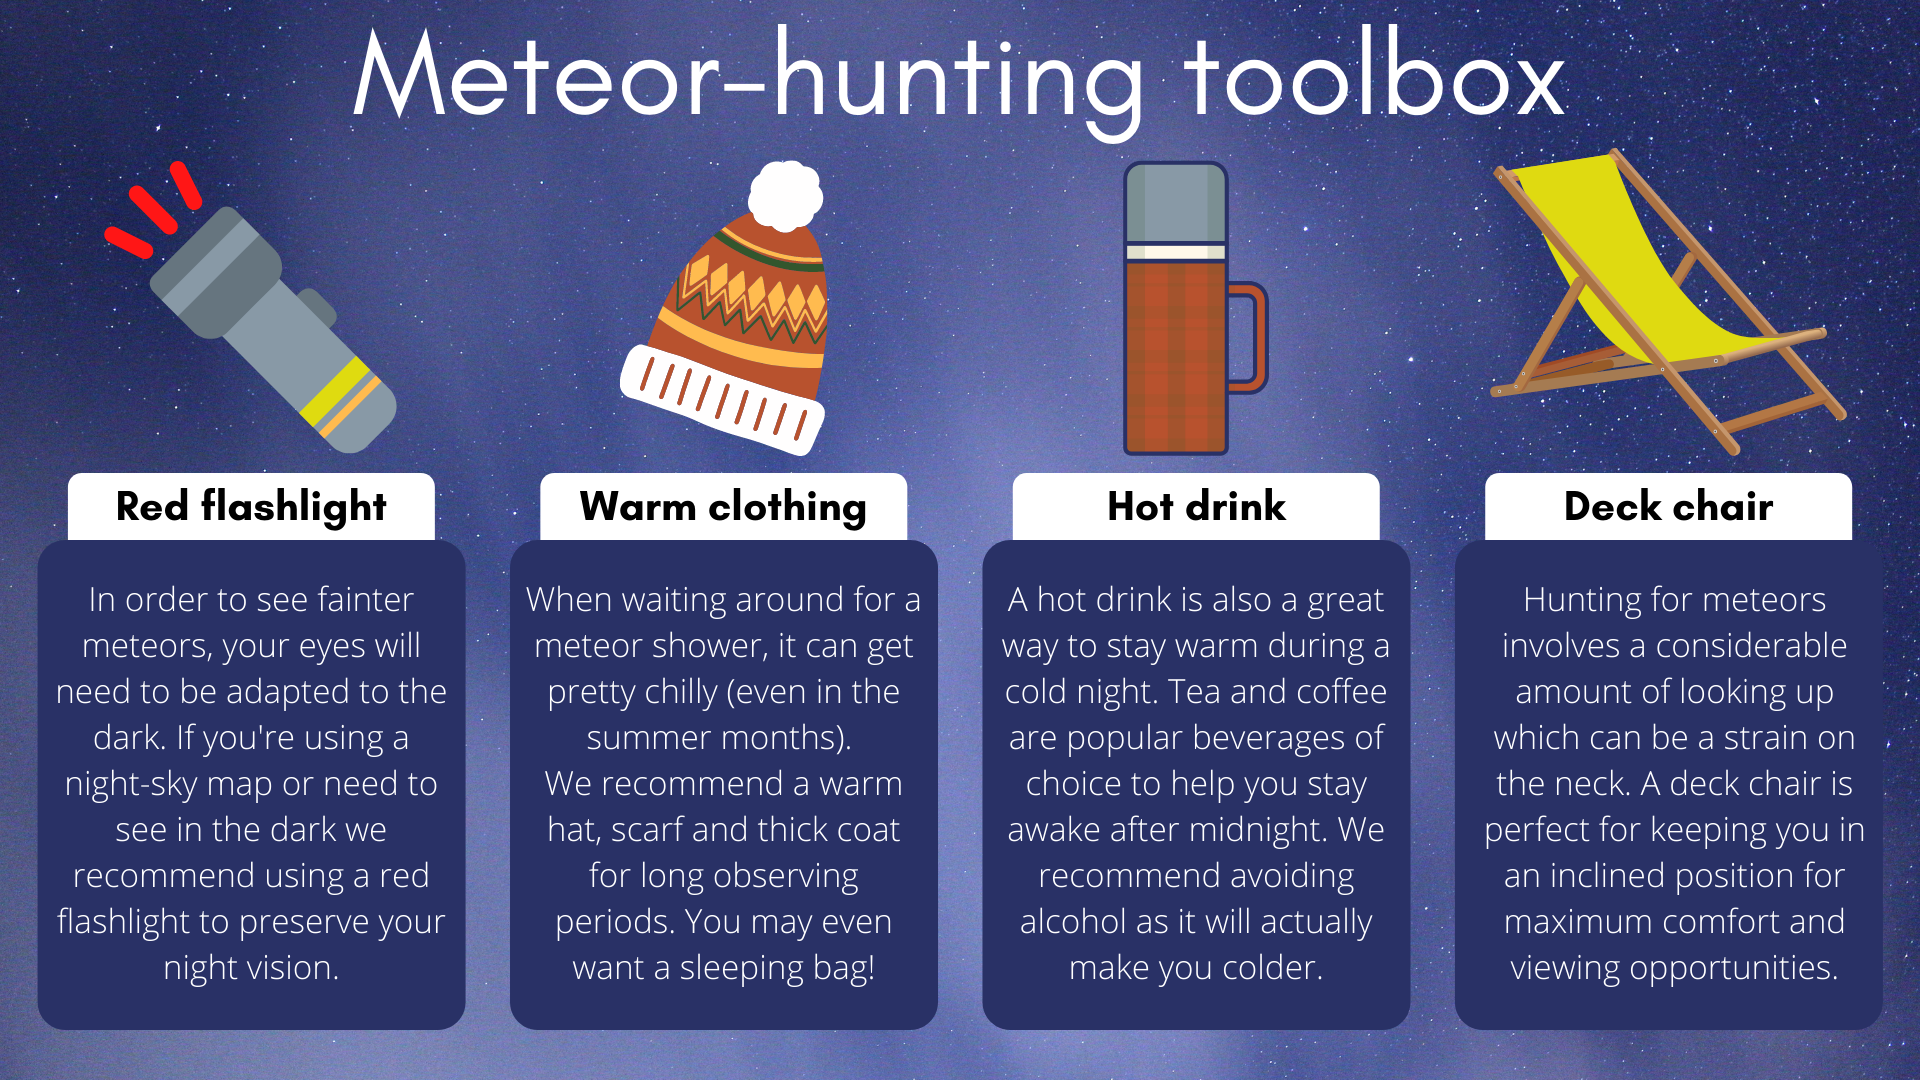 Pentru o experiență perfectă de vânătoare de meteori, veți avea nevoie de o lanternă de referință, îmbrăcăminte caldă, o băutură caldă și un șezlong frumos.